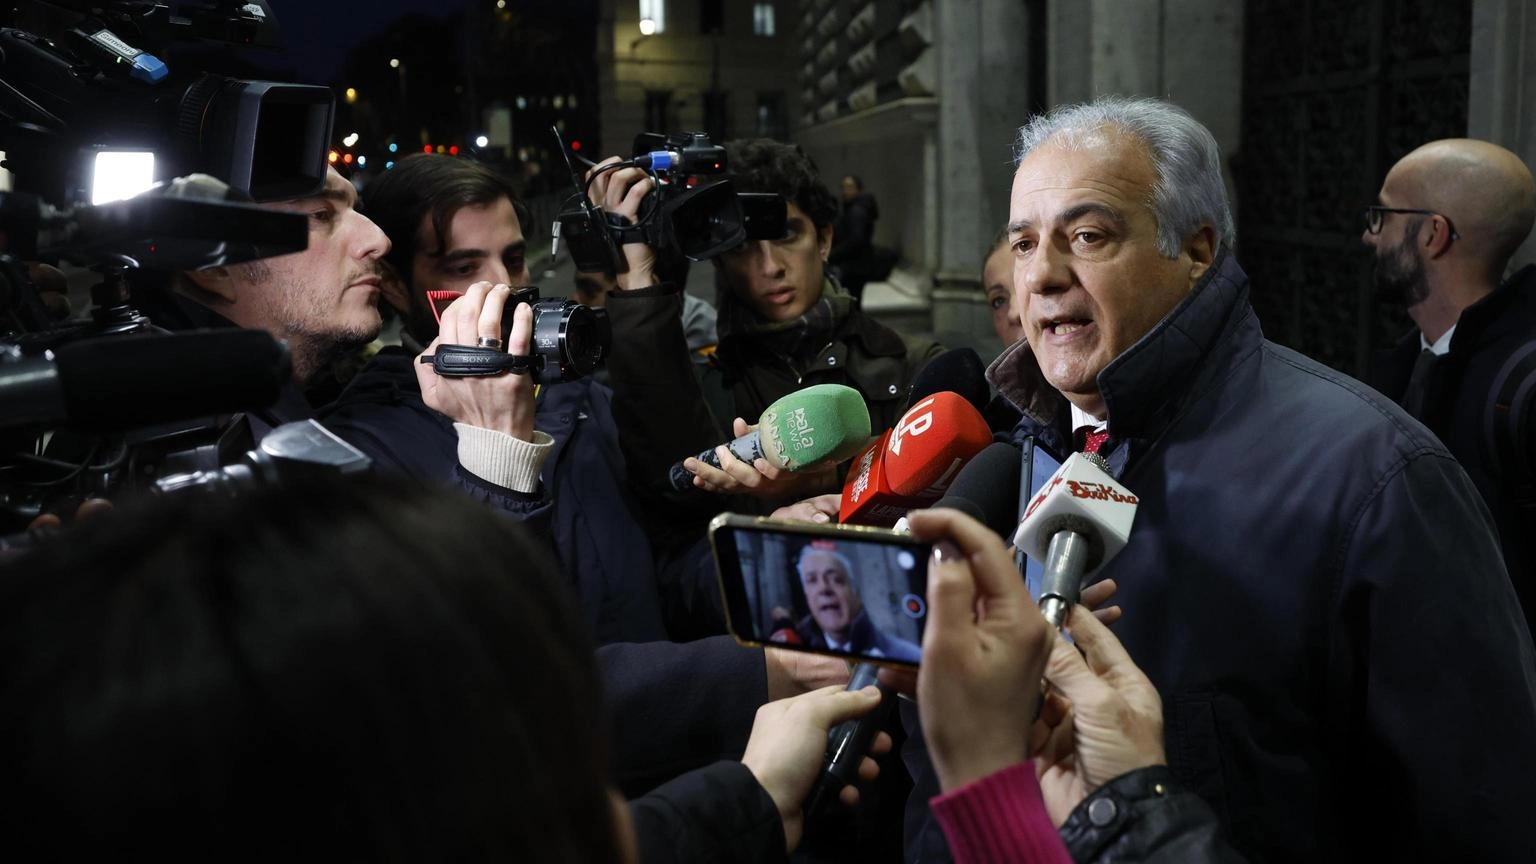 Roberto Salis contro il governo, 'Ilaria resterà in cella'